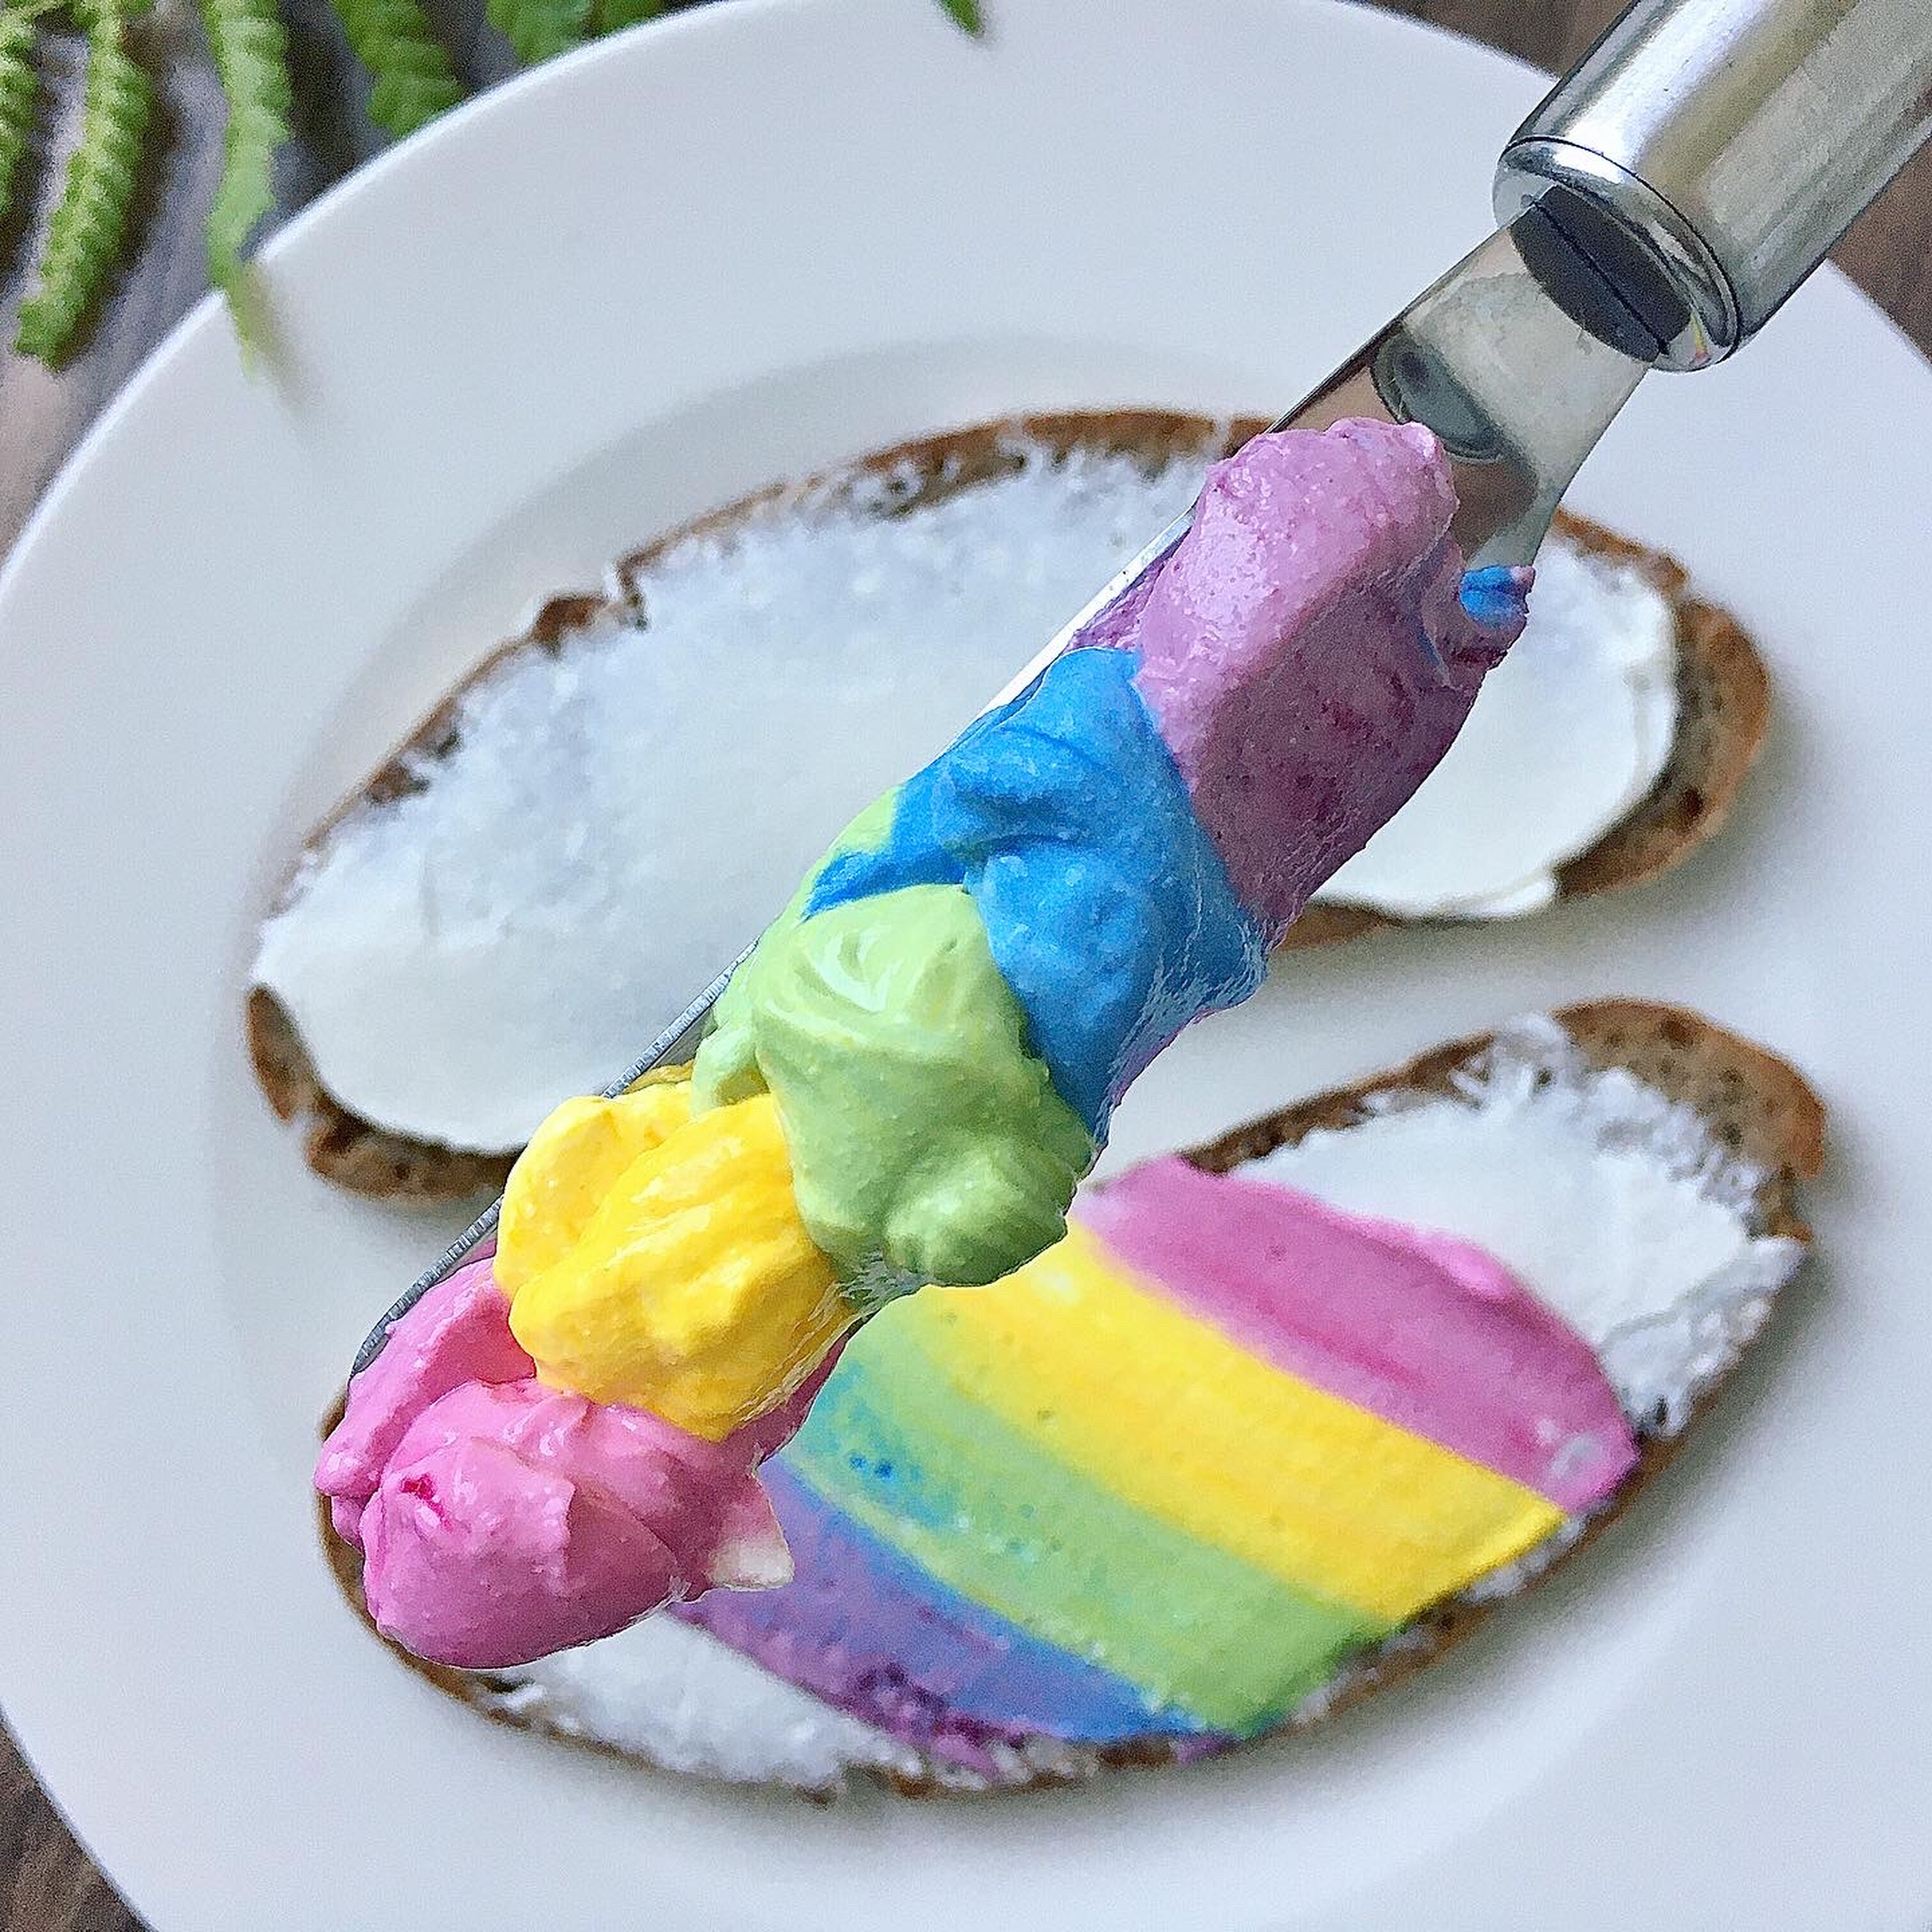 Verteilt von jeder Farbe einen Klecks nebeneinander auf ein Messer und streicht den Regenbogen auf euer Brot (meins ist ein Roggenbrot)